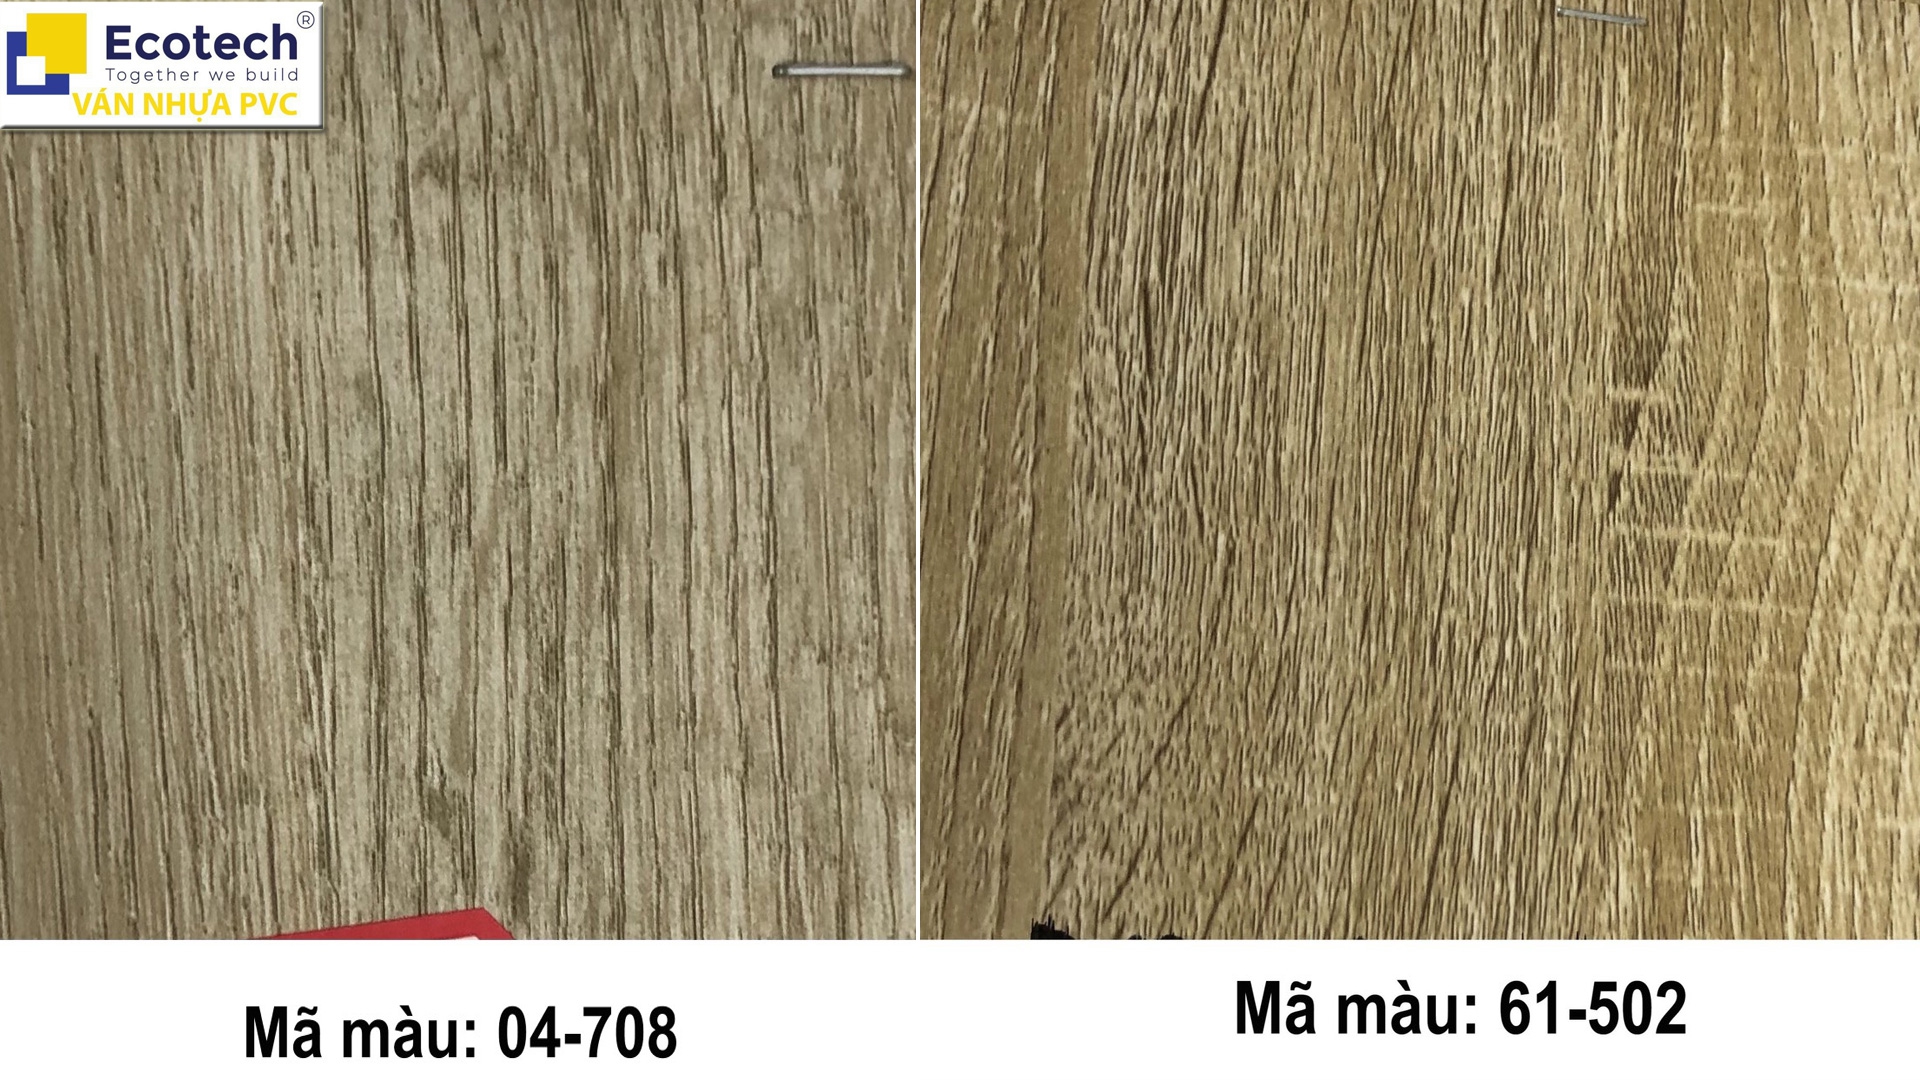 Hình ảnh mã màu bề mặt ván nhựa PVC vân gỗ